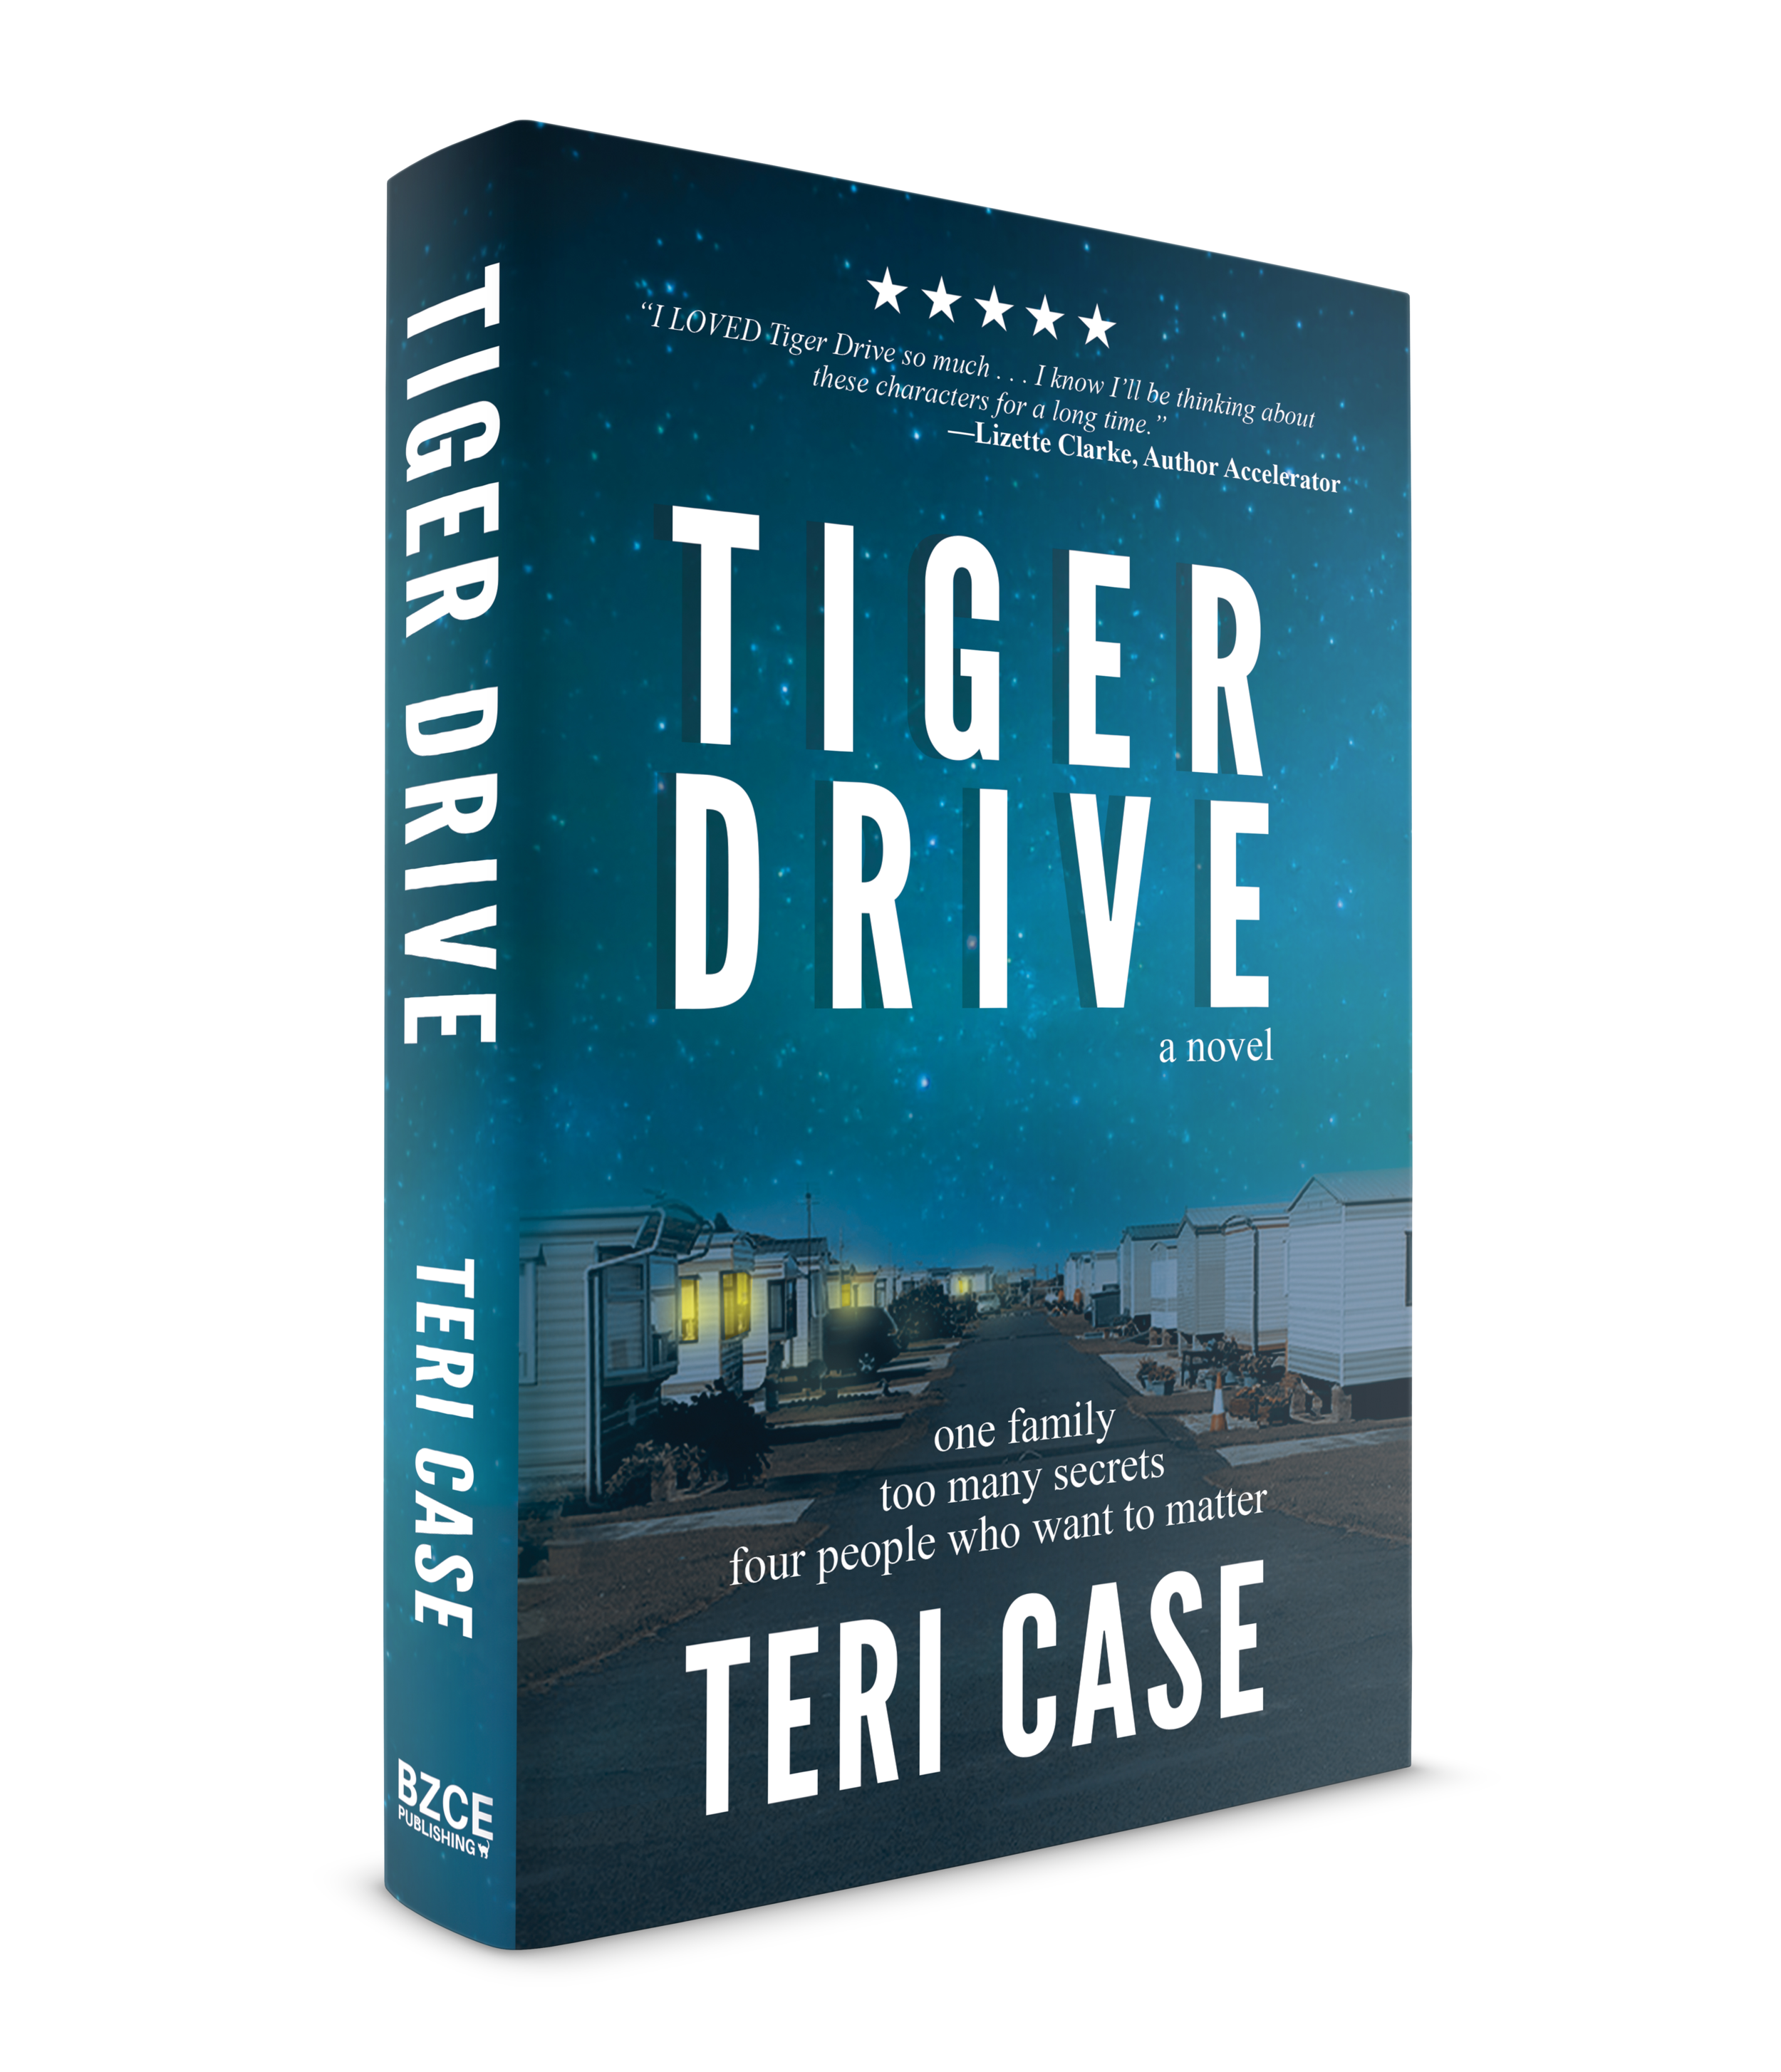 Tiger Drive